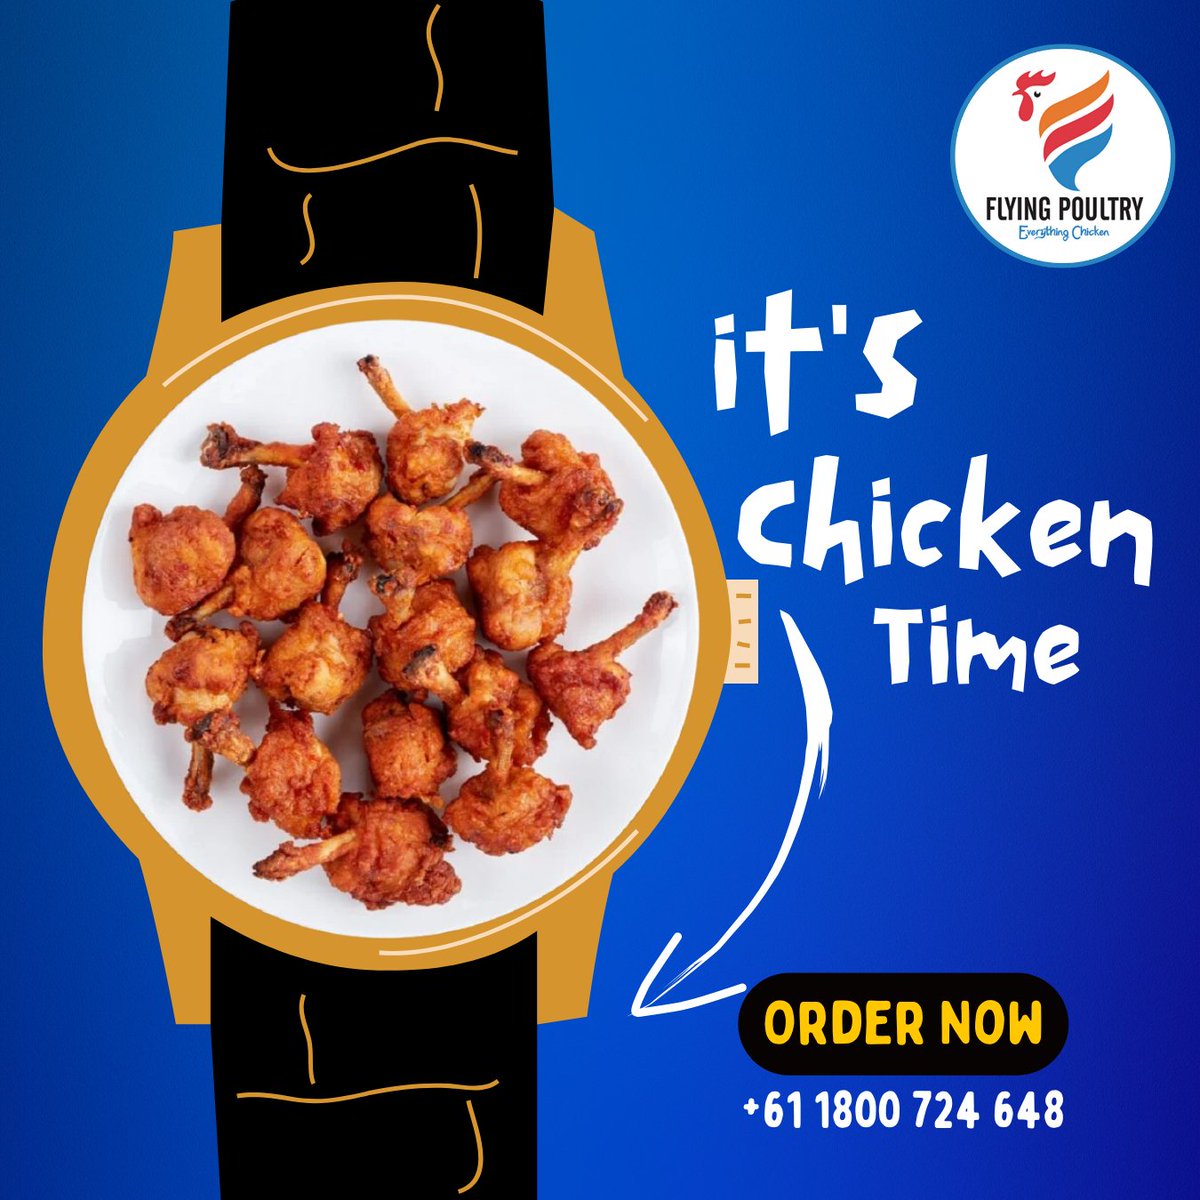 It's Chicken Time, Order Best Quality Marinated Tandoori Chicken Lollipops & ignite your taste buds. Order Now +61 1800 724 648 #chickenlollipops #indiansinsydney #tandoorichicken #TrendingNow #weekendoffer #punjabifood #melbourne #reelsinstagram #chicken #beconnected